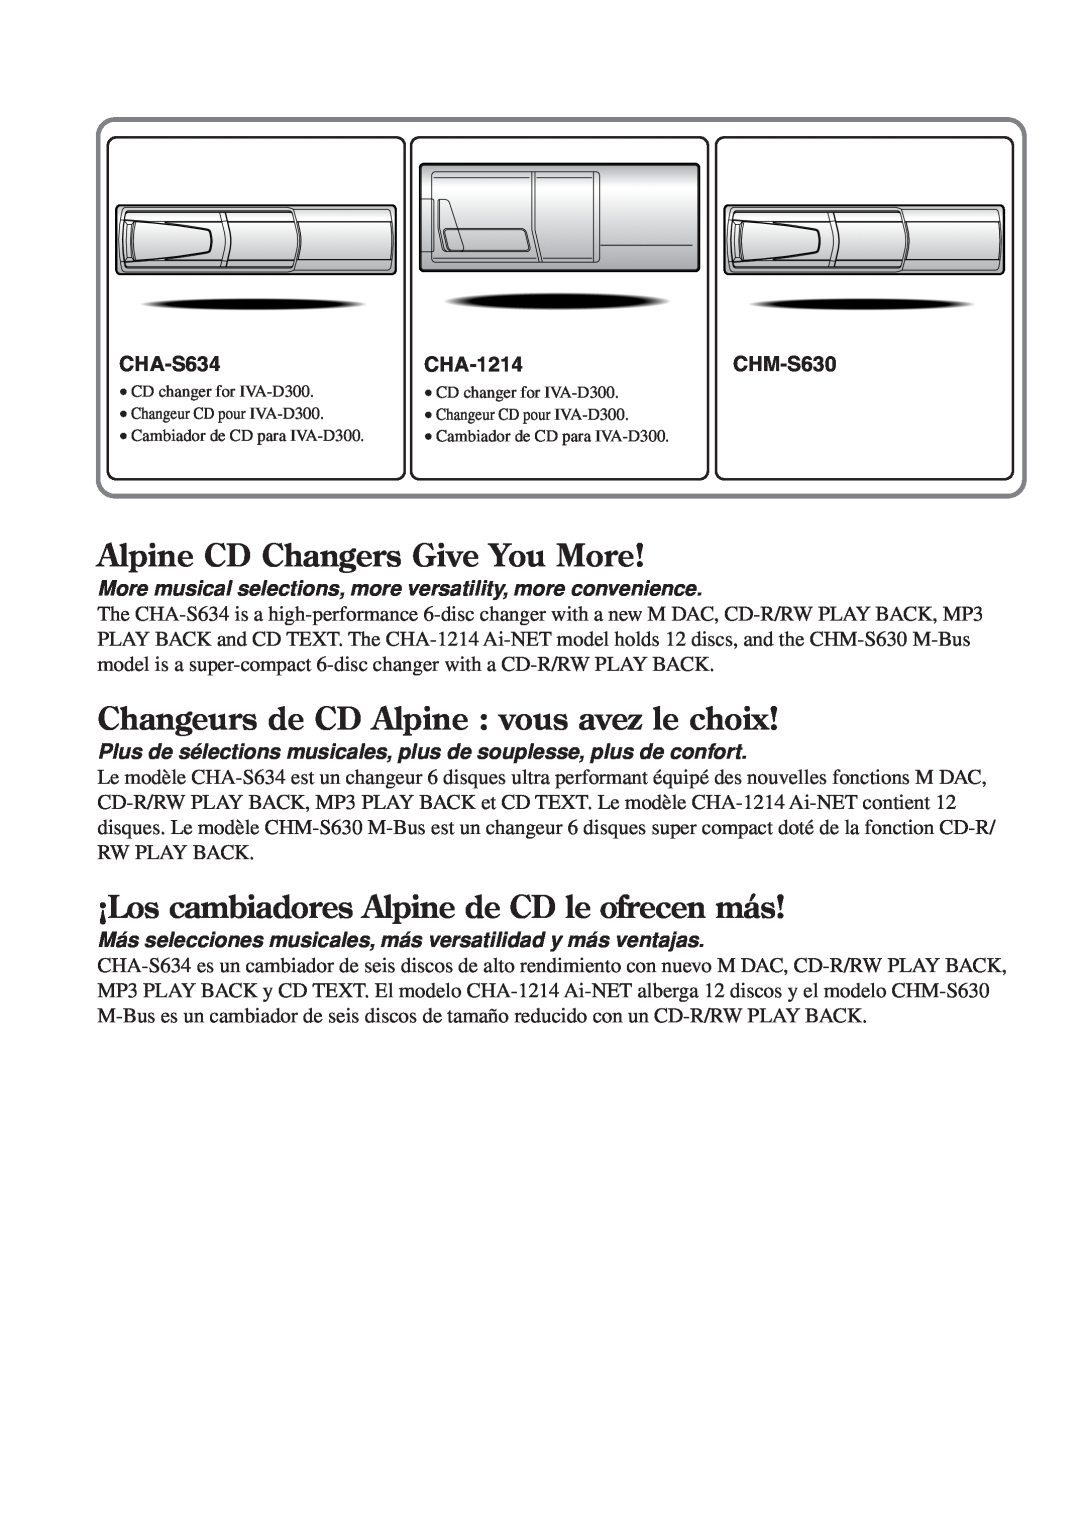 Alpine IVA-D300 Alpine CD Changers Give You More, Changeurs de CD Alpine : vous avez le choix, CHA-S634, CHA-1214CHM-S630 